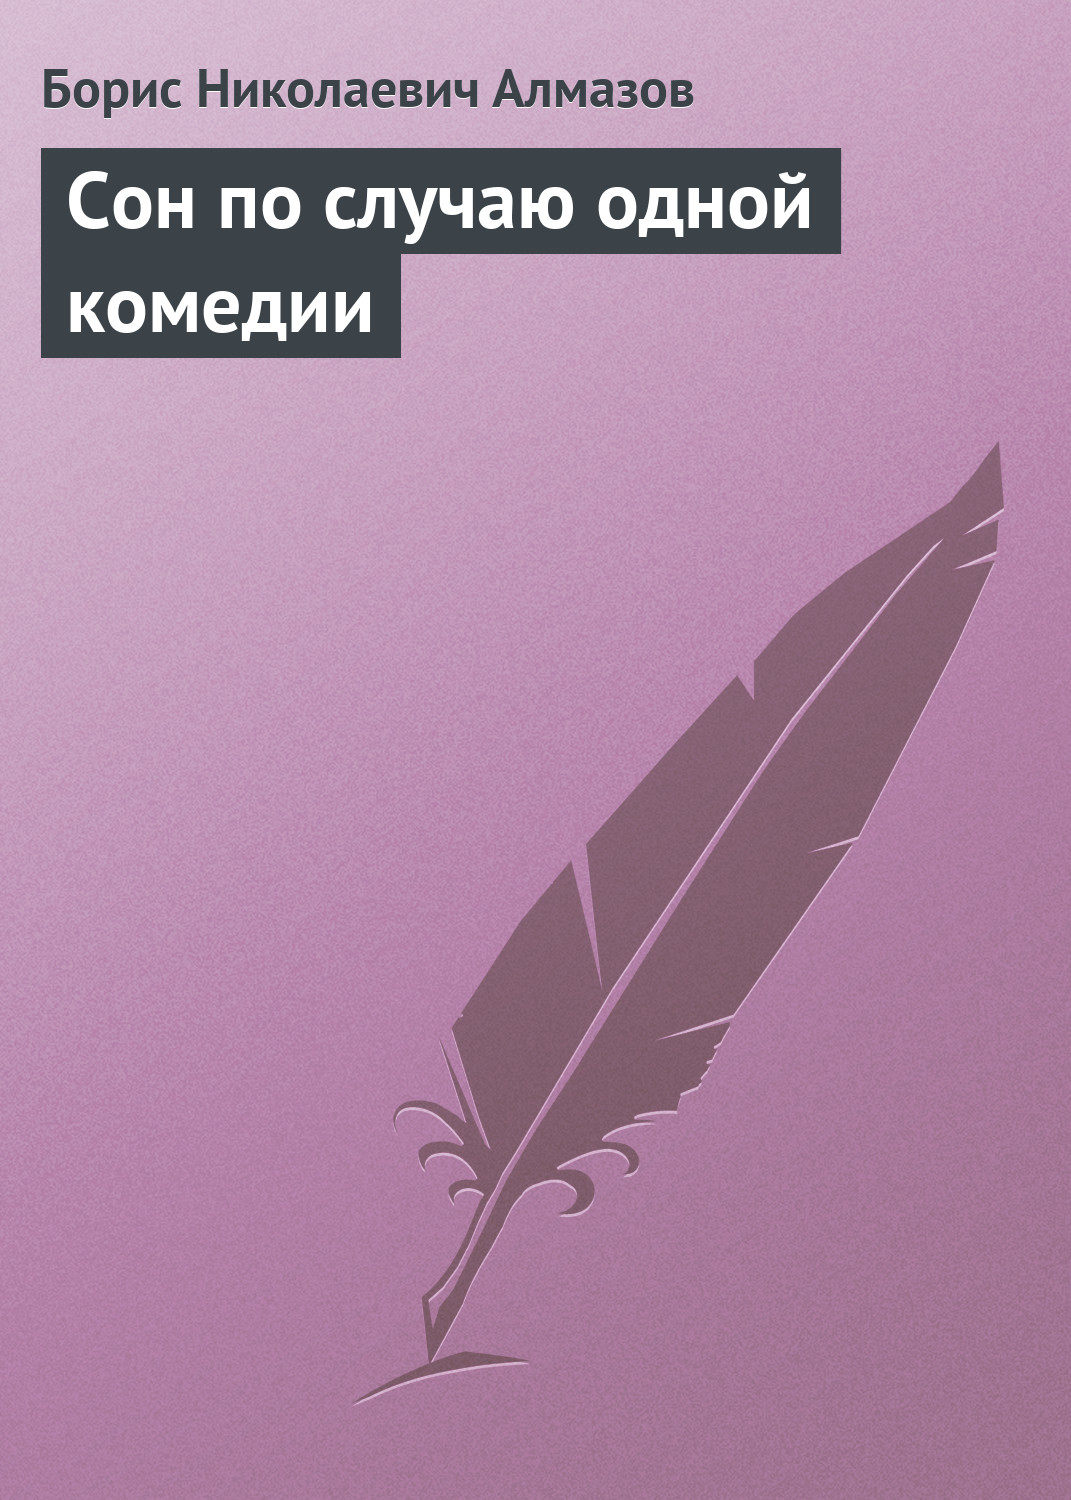 Сон по случаю одной комедии, Борис Николаевич Алмазов – скачать книгубесплатно fb2, epub, pdf на Литрес